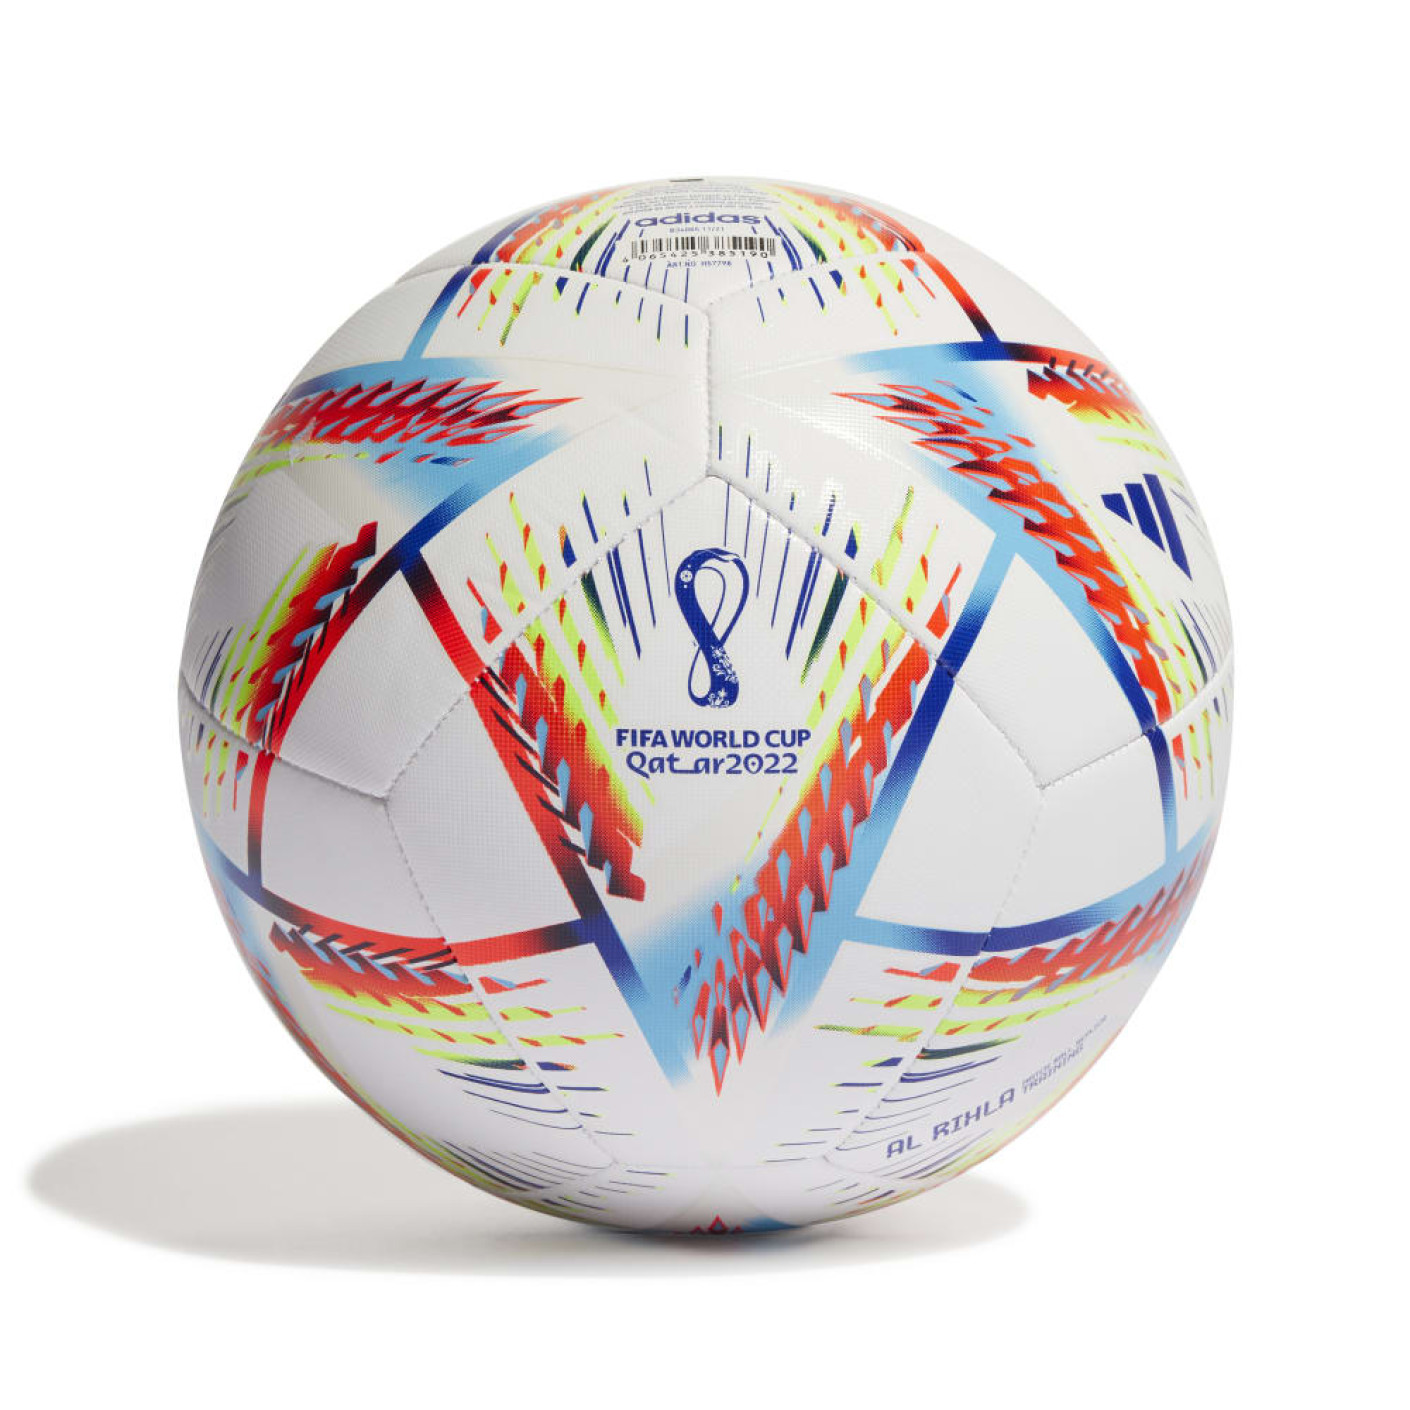 Les ballons officiels de la Coupes du monde FIFA sur